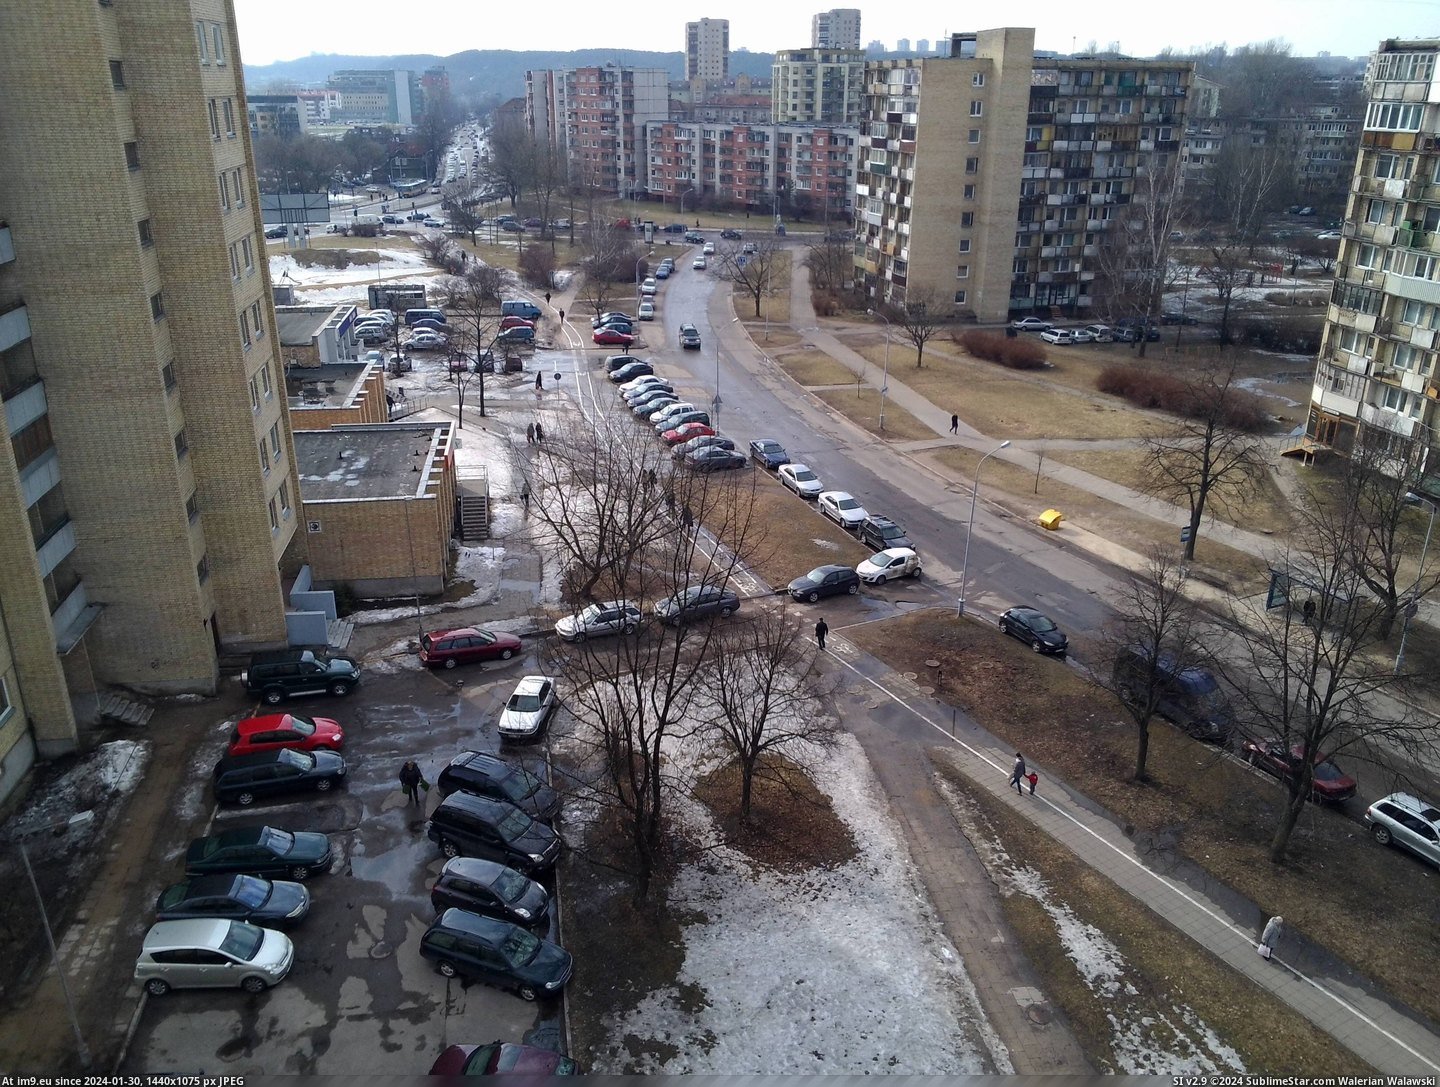  #Vilnius  20130412-1639vilnius Pic. (Изображение из альбом kovas))